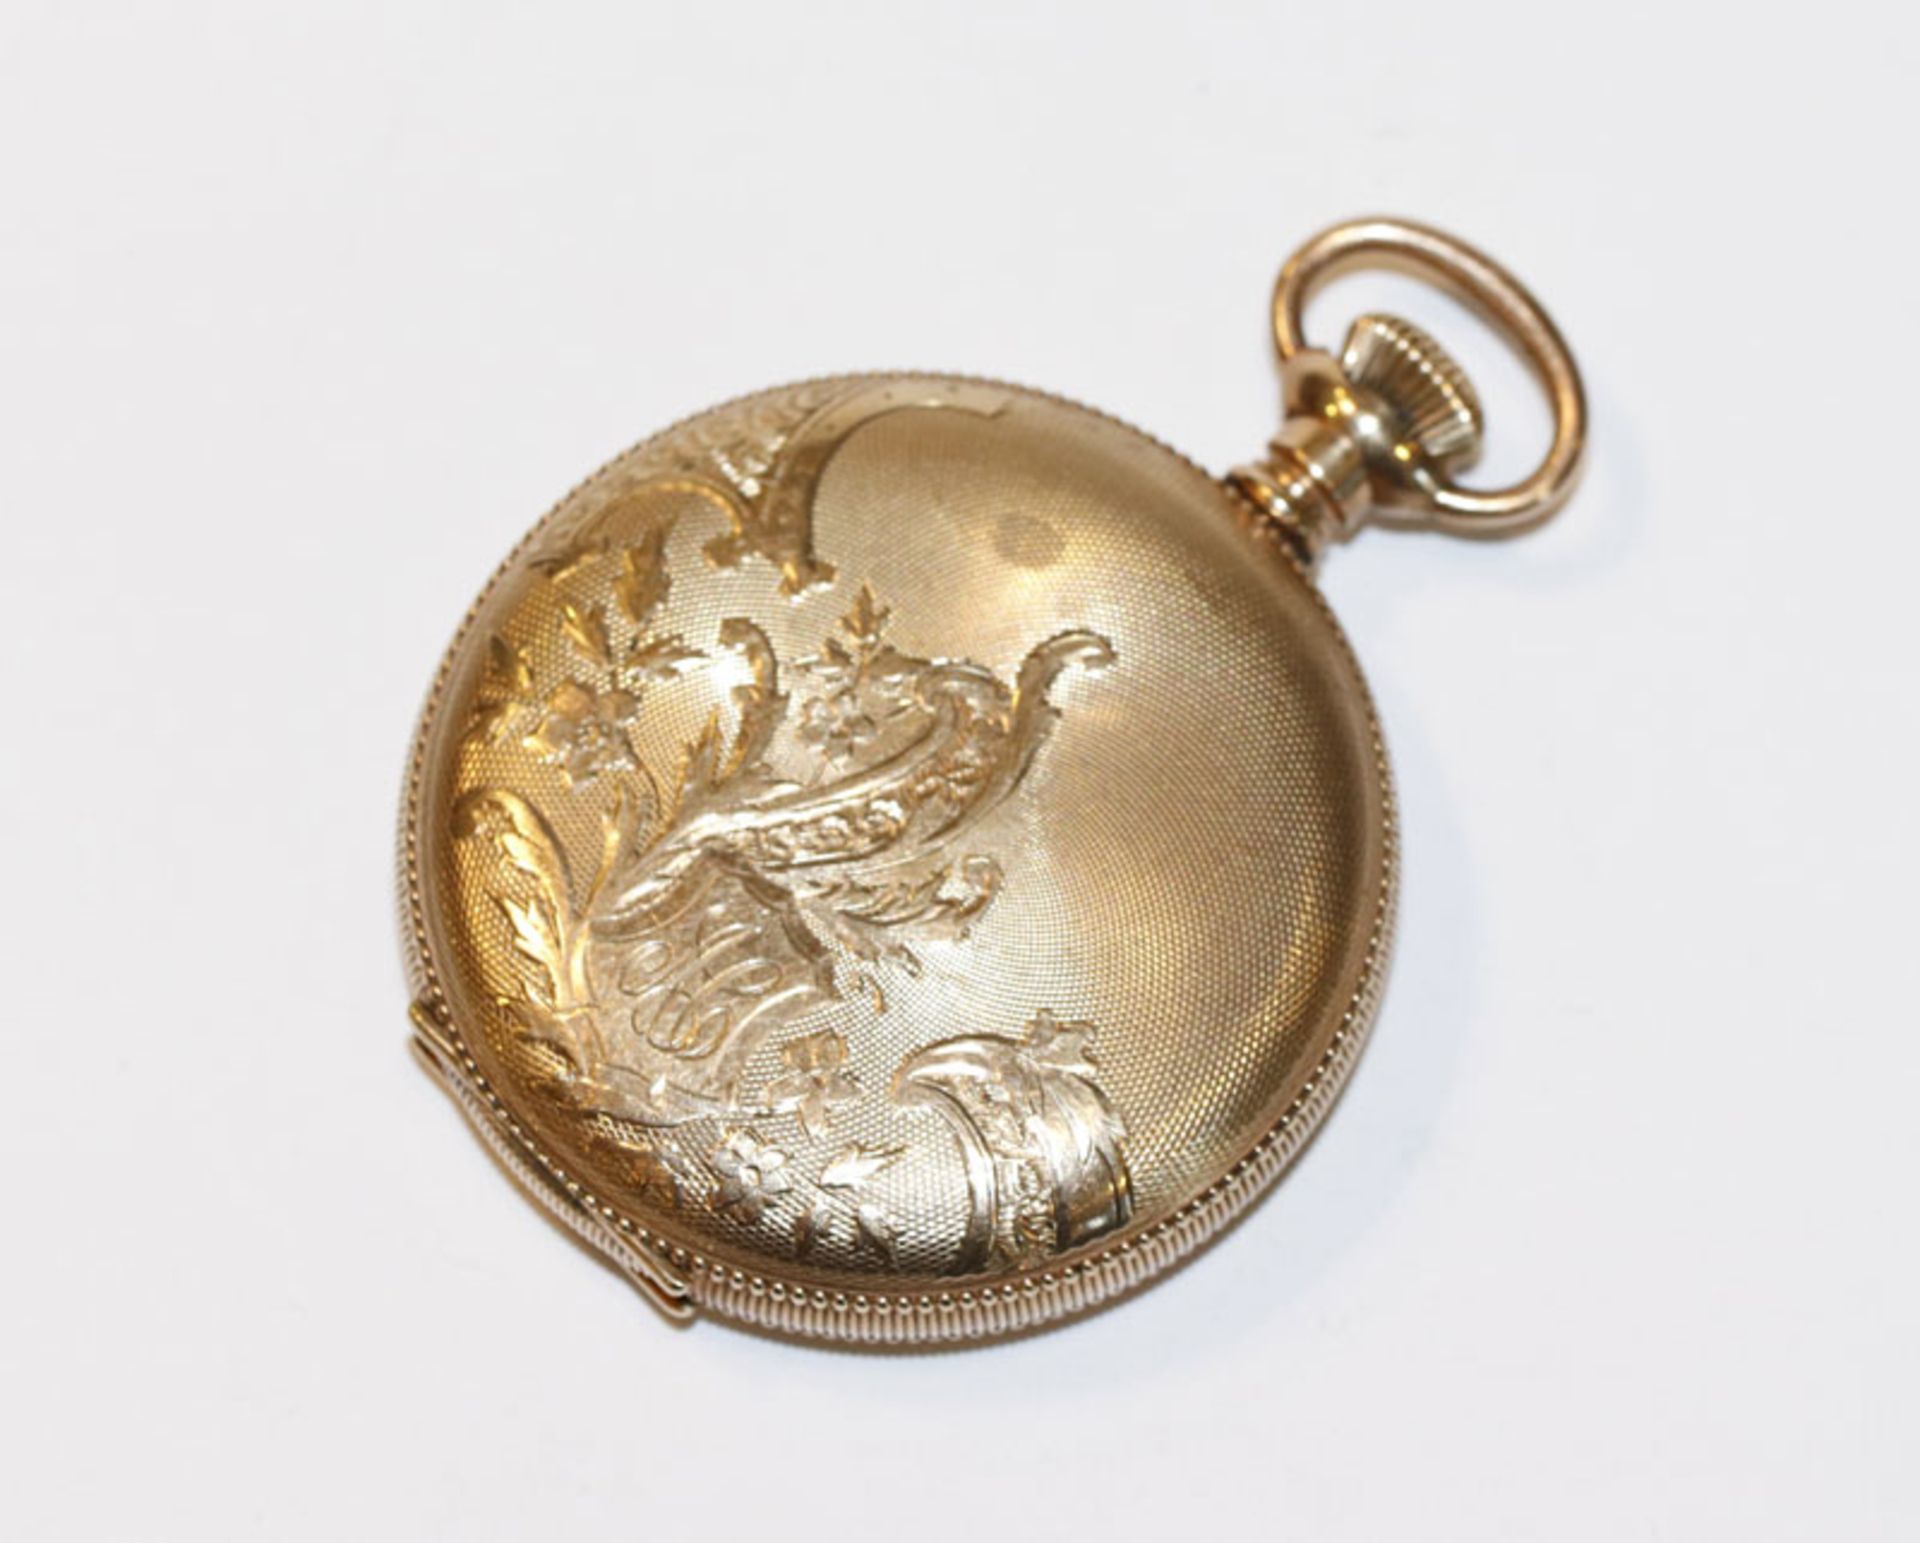 Elgin USA, Sprungdeckel Taschenuhr, vergoldet mit graviertem Gehäuse, schönes Werk, Uhrenglas fehlt,